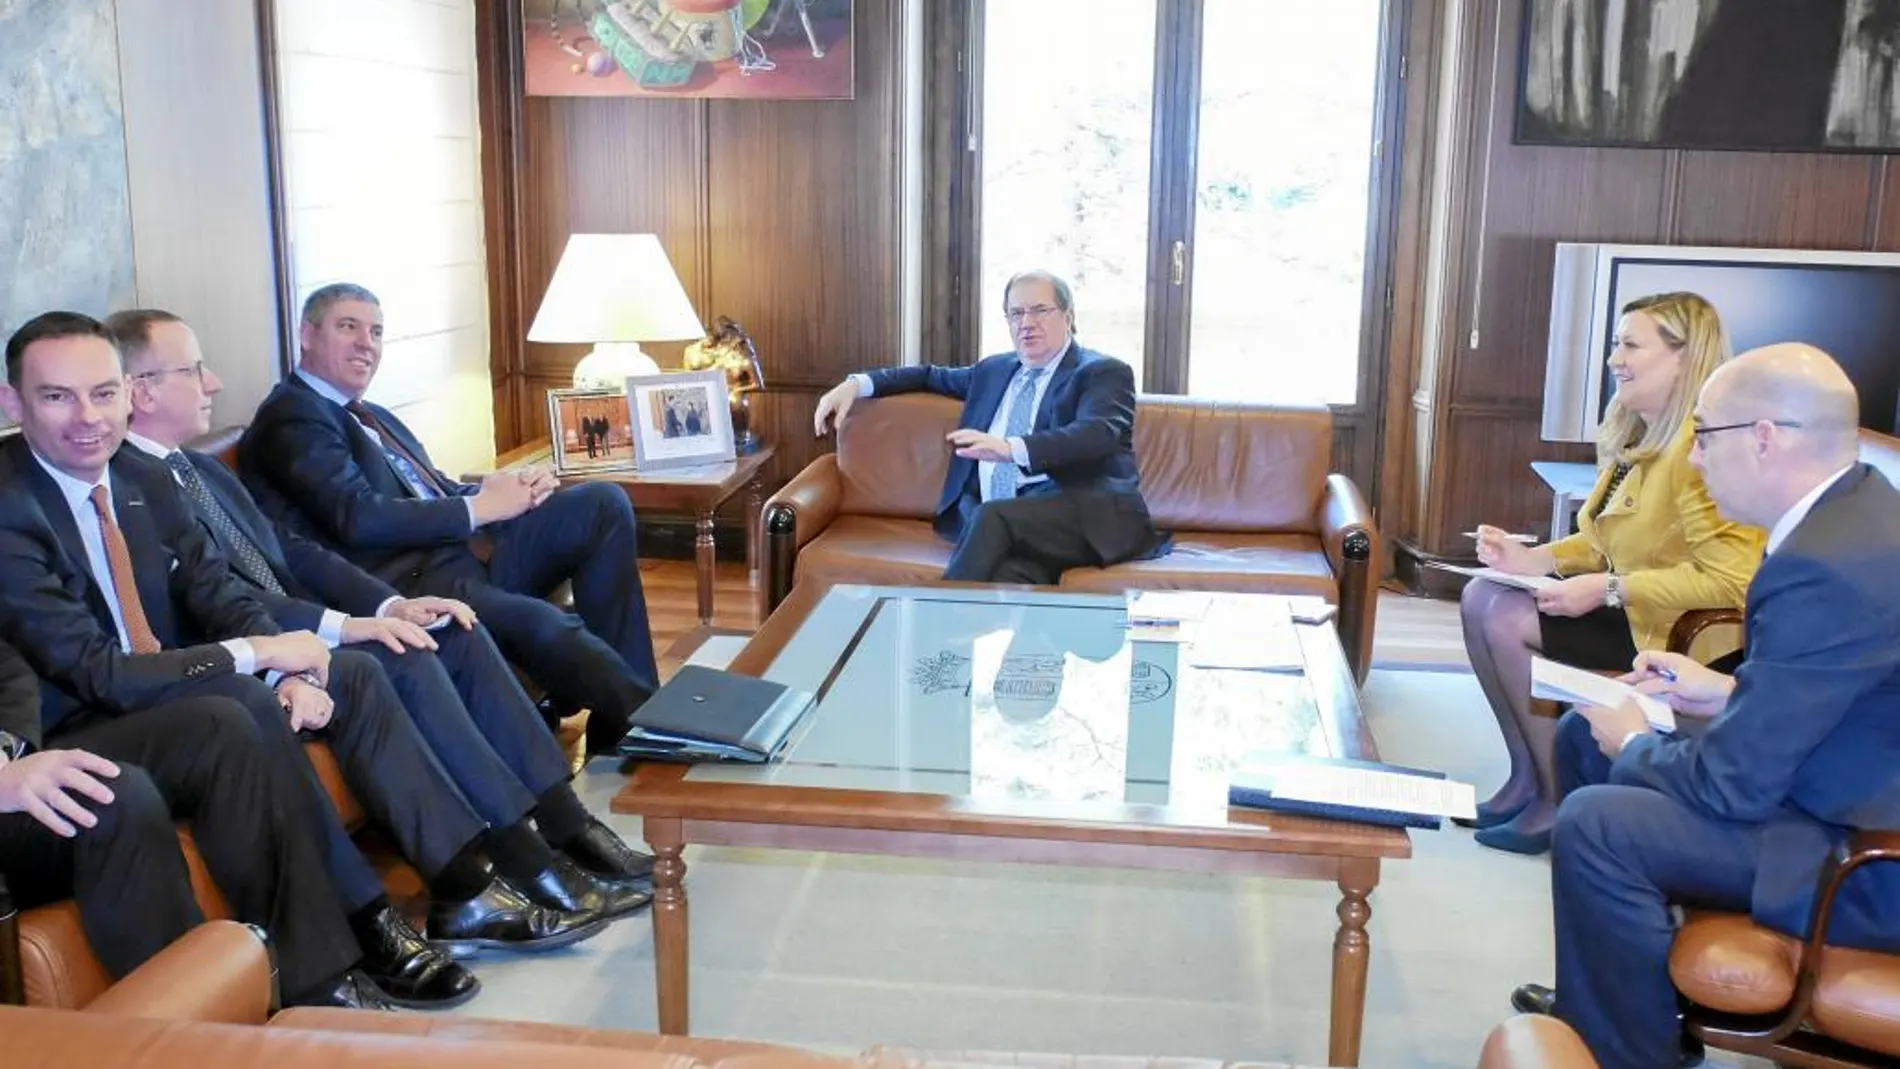 El presidente Herrera, Pilar del Olmo y Tobalina se reúnen en la sede de la Junta con los dirigentes de Nissan encabezados por Vicente de los Mozos.